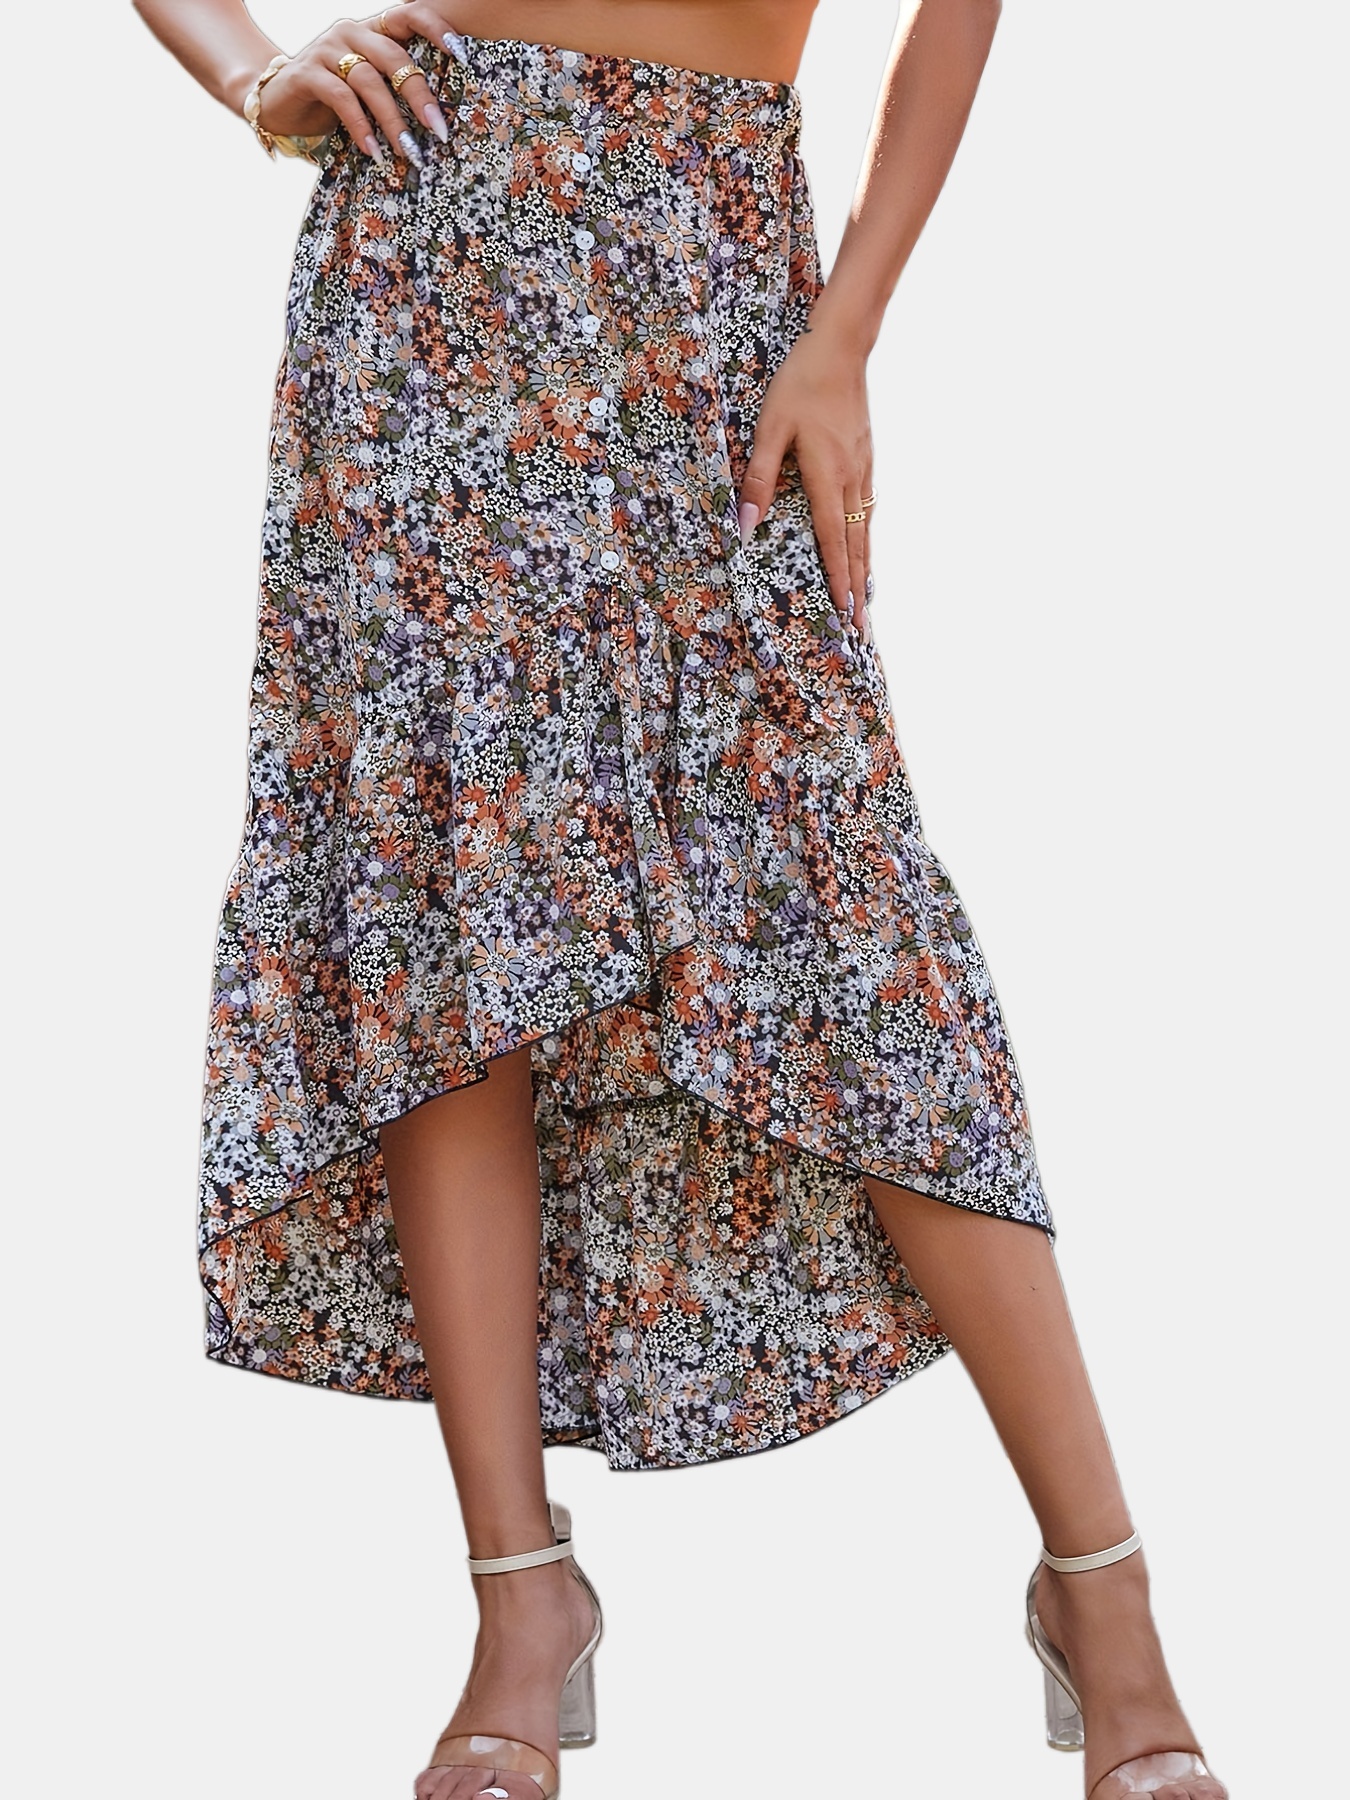 Boho Floral Print Ruffle Hem Skirt, Low High Skirt For Spring & Summer ...